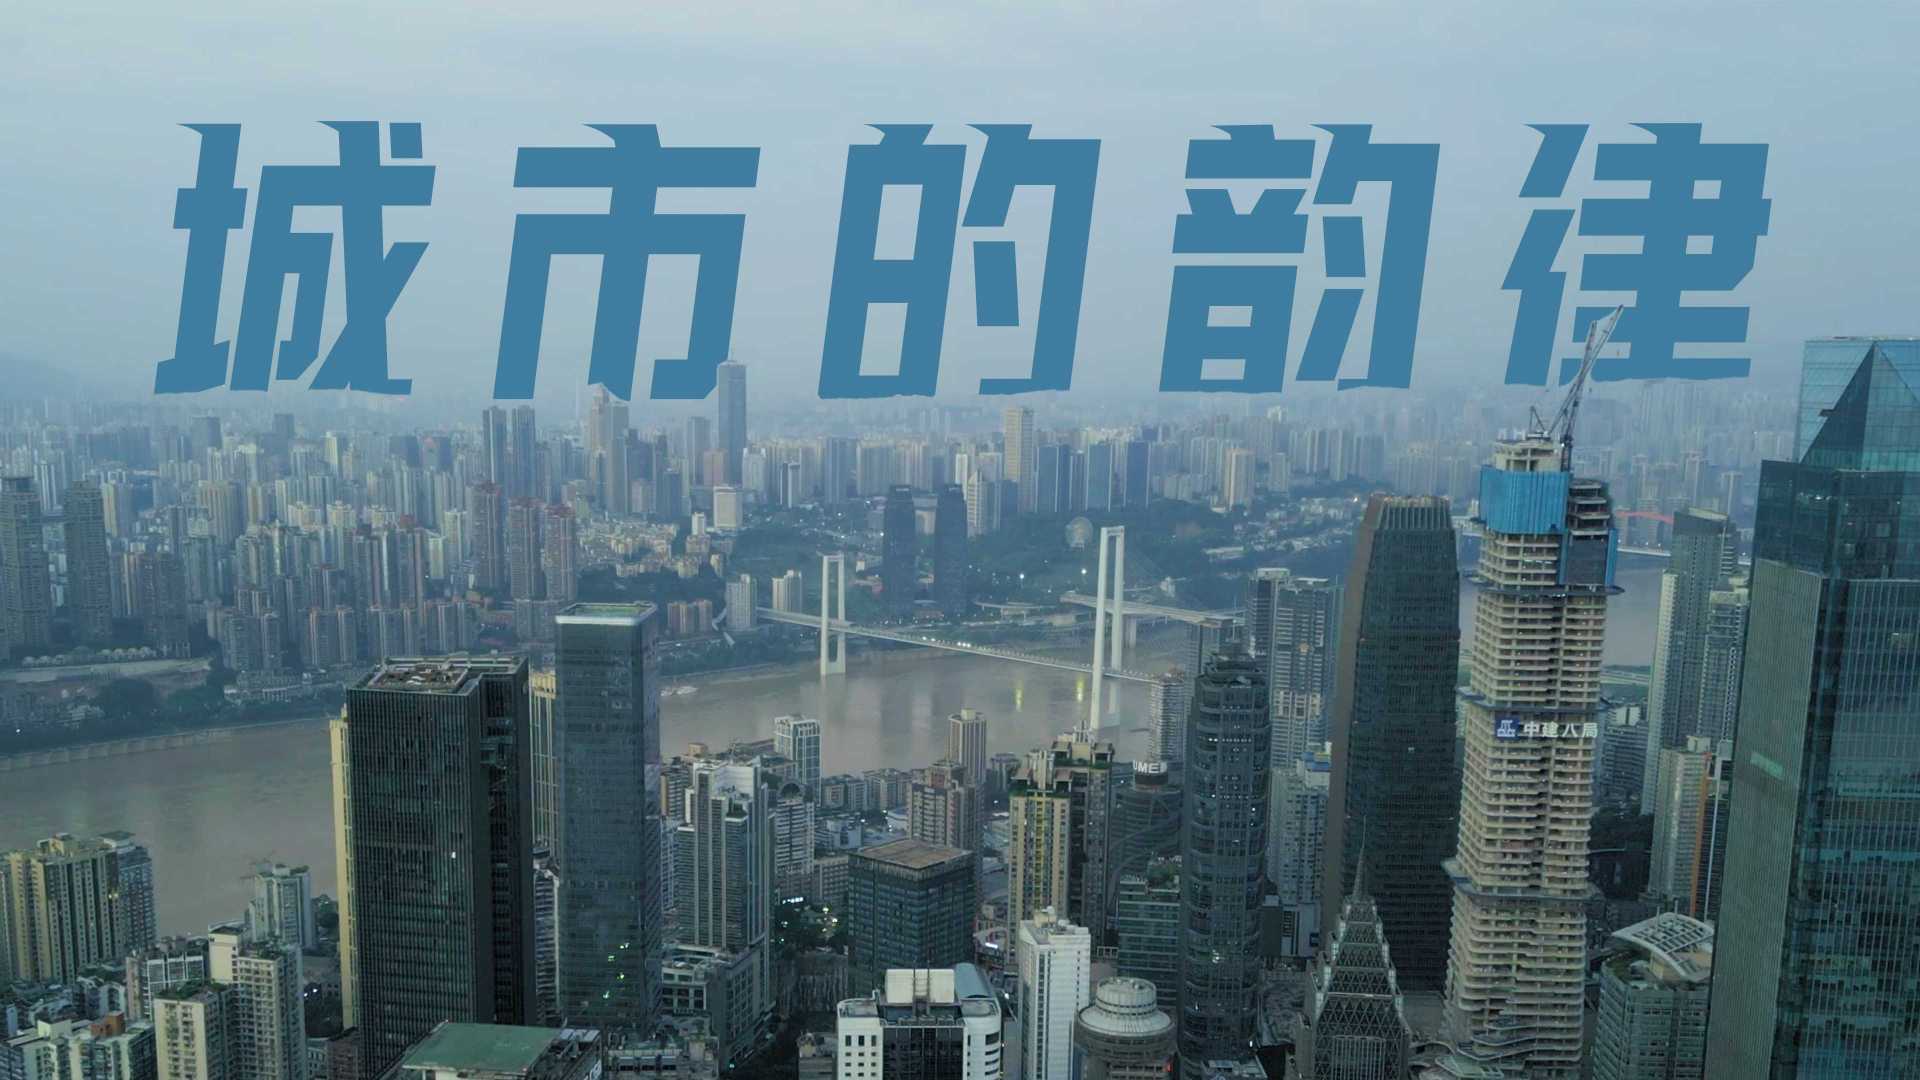 【 山城的夏天 / 还未完结 / 感受城市的韵律 】重庆酒店宣传片